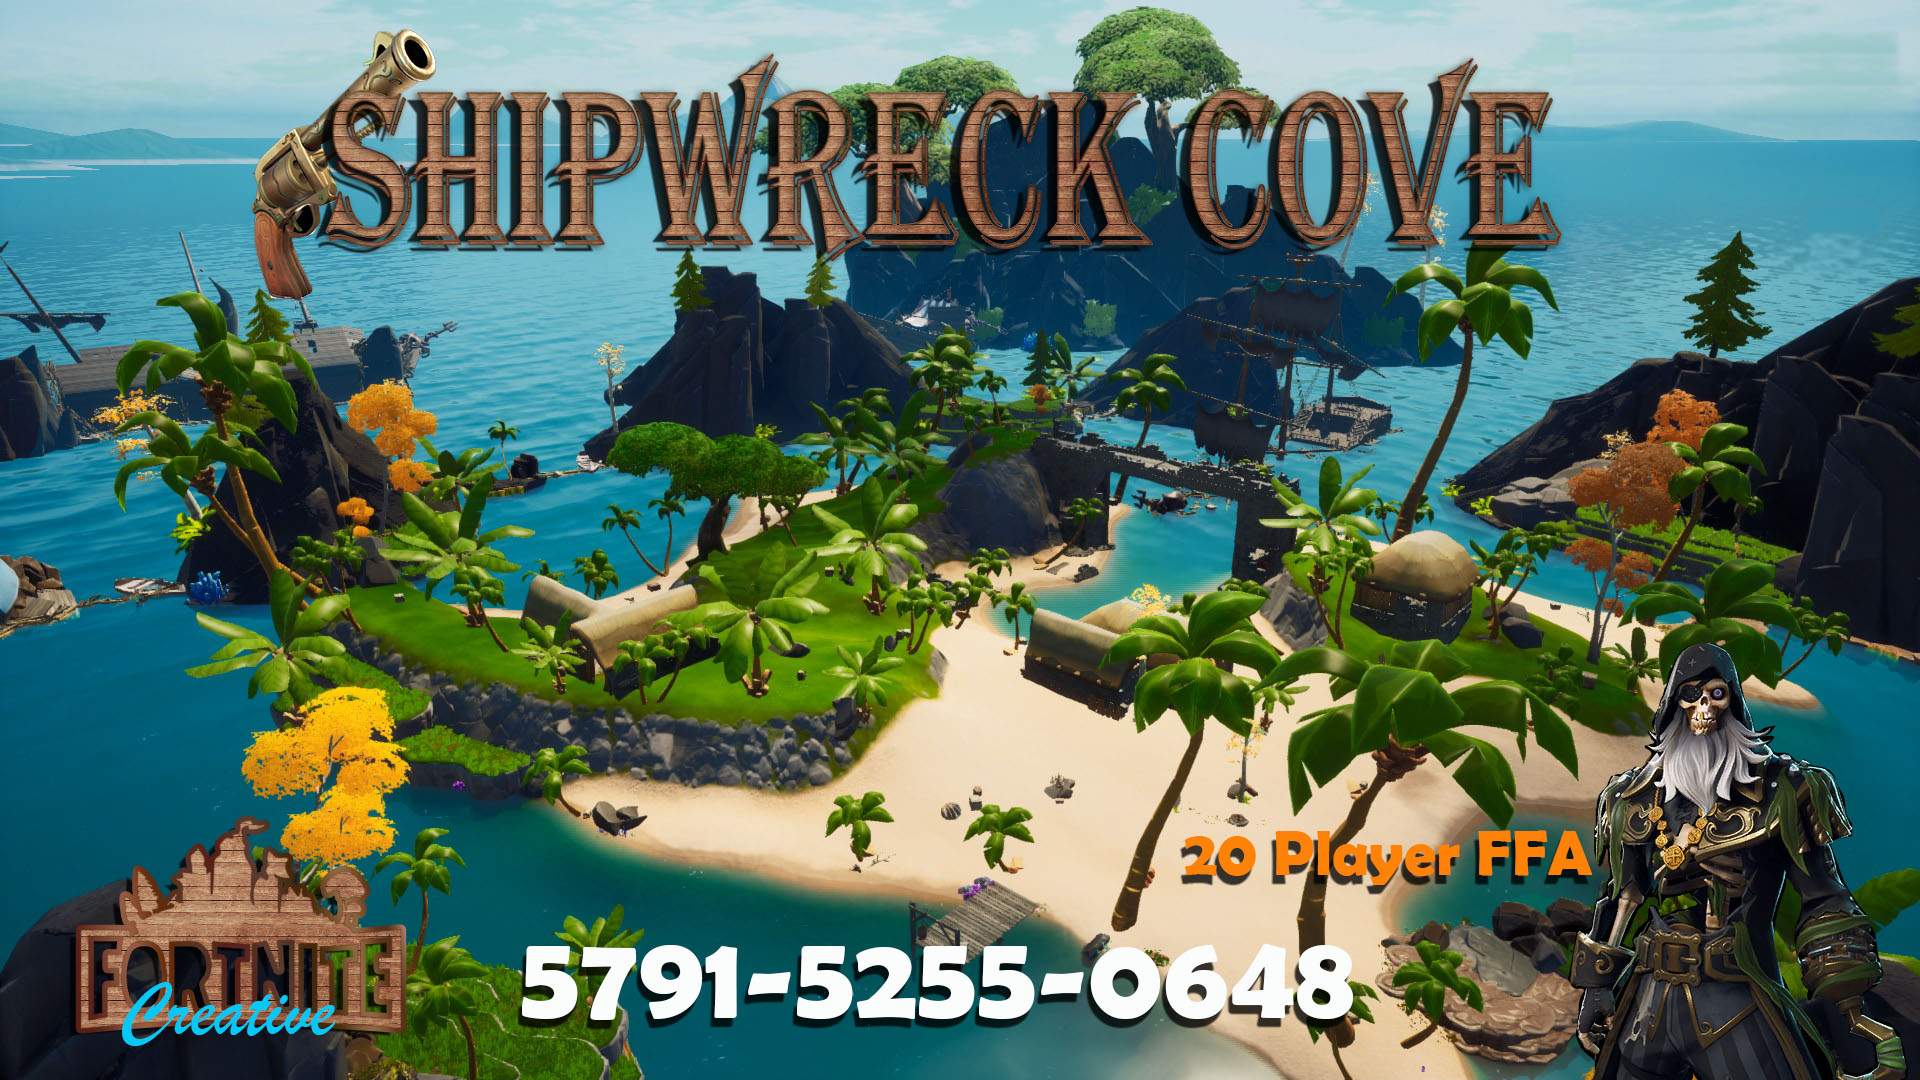 SHIPWRECK COVE (20 PLAYER FFA)